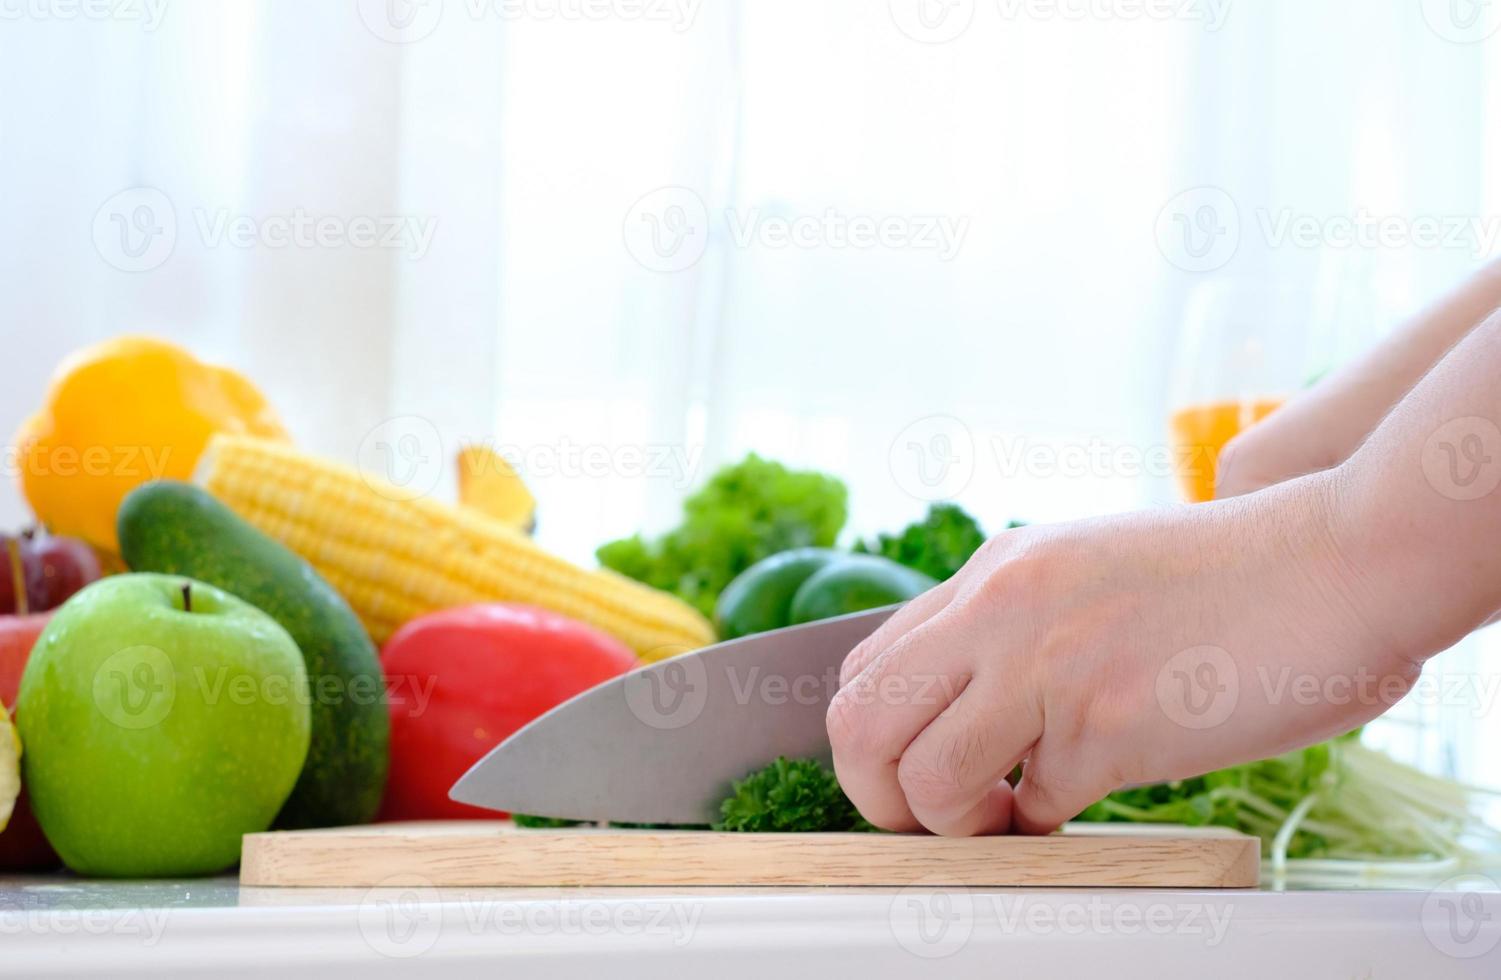 mani usando un coltello per tagliare le verdure su un tagliere di legno foto